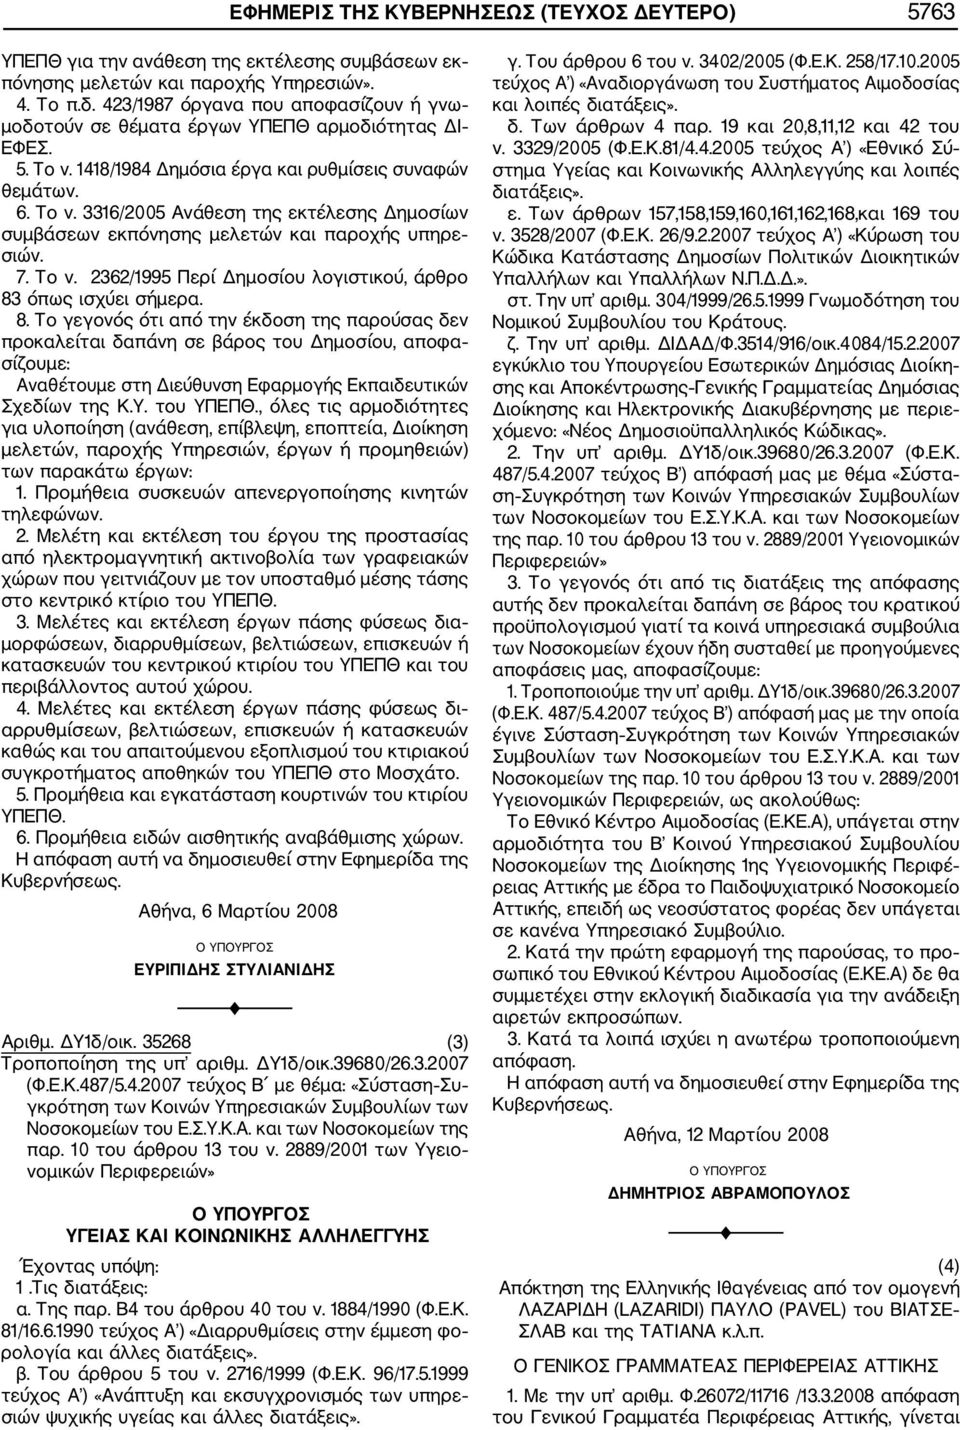 7. Το ν. 2362/1995 Περί Δημοσίου λογιστικού, άρθρο 83